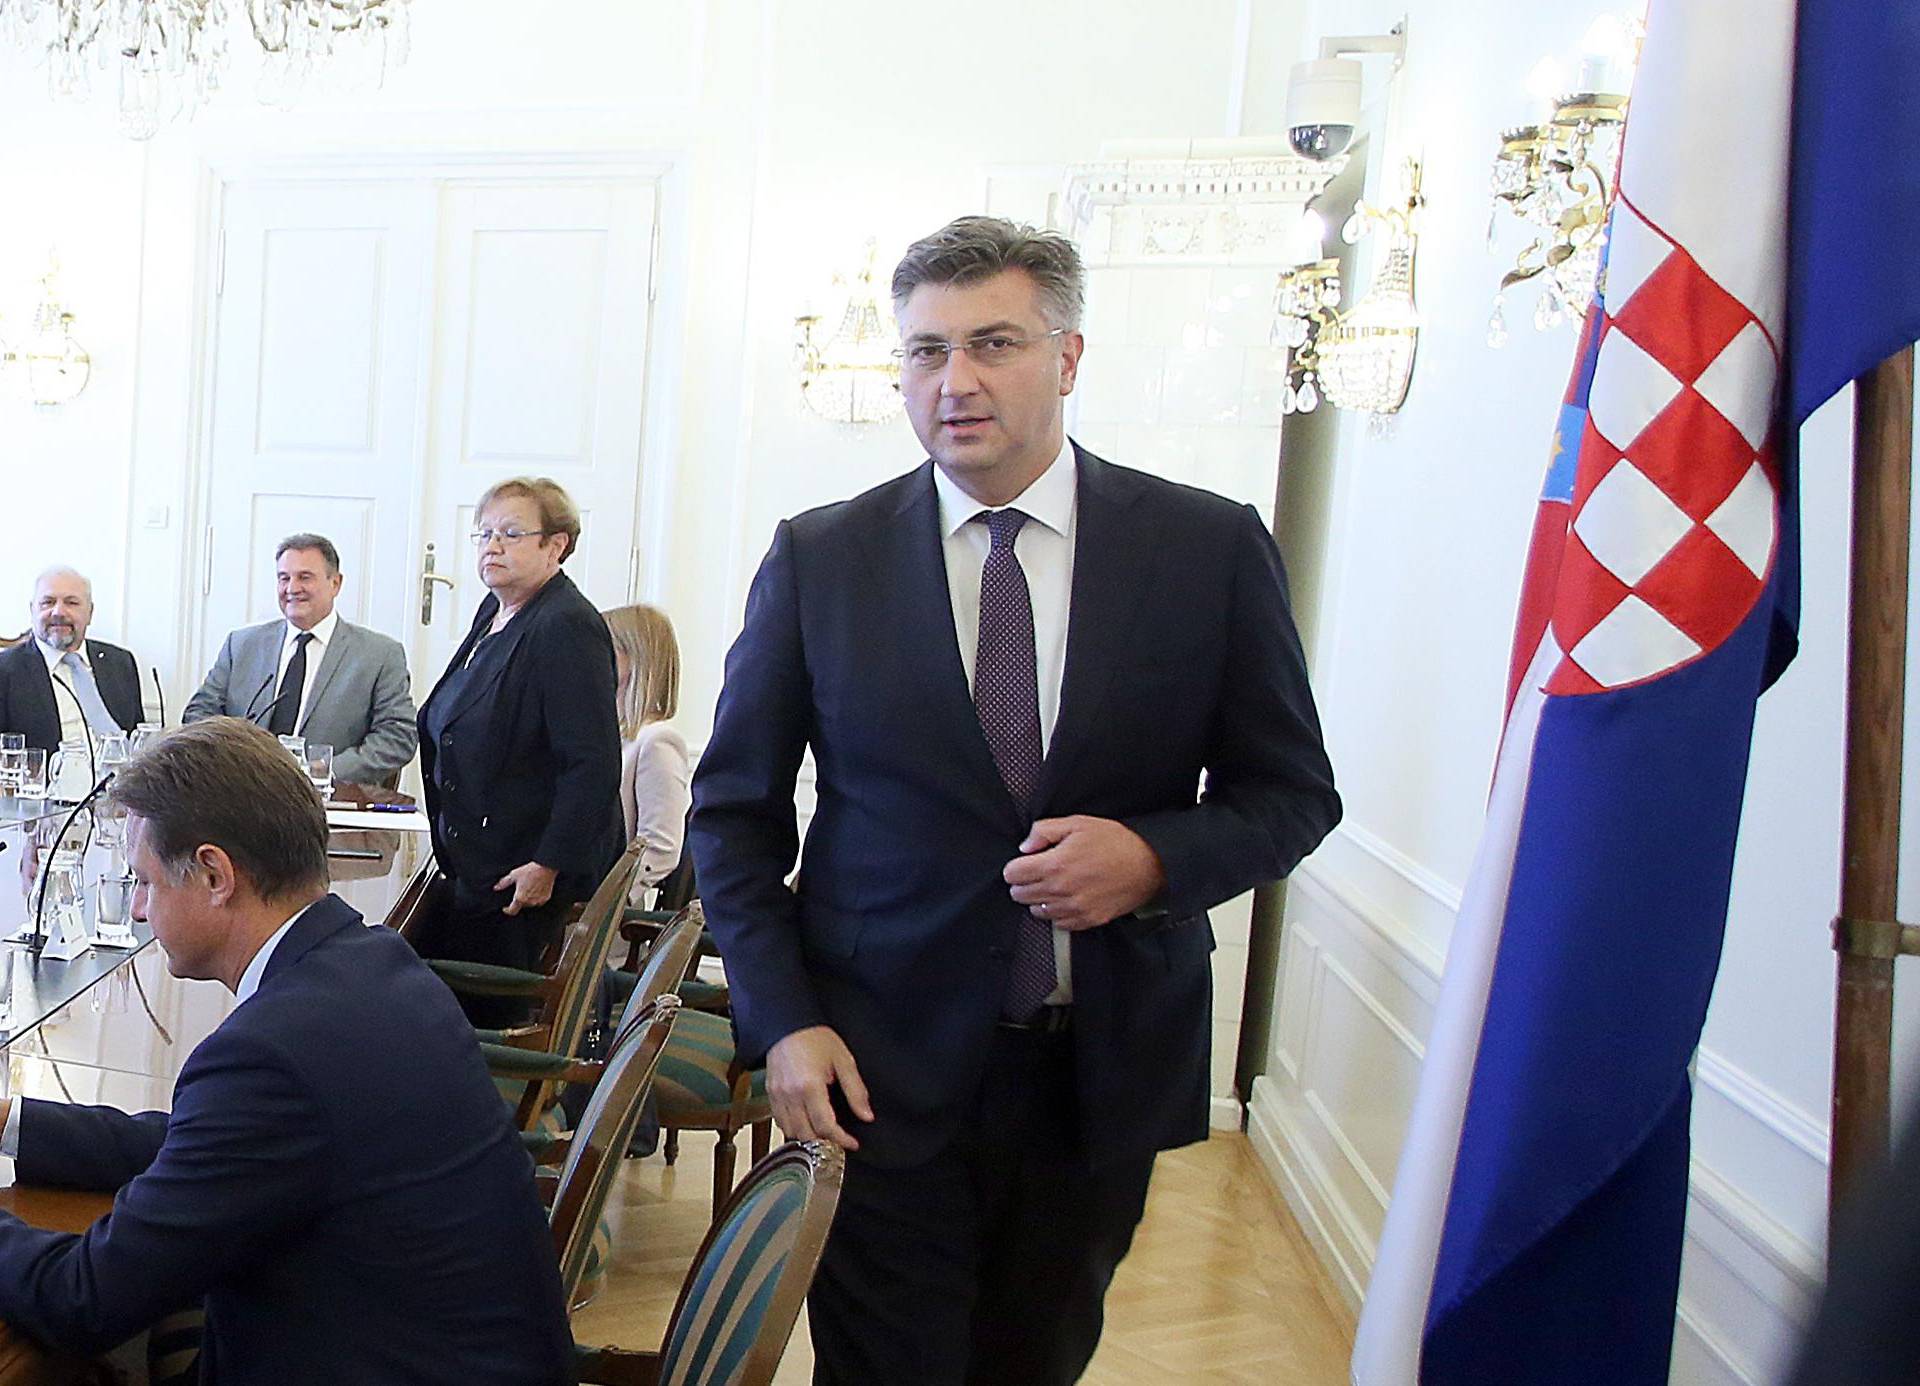 'Popuštanje Sloveniji ne dolazi u obzir, nastavljamo pregovore'